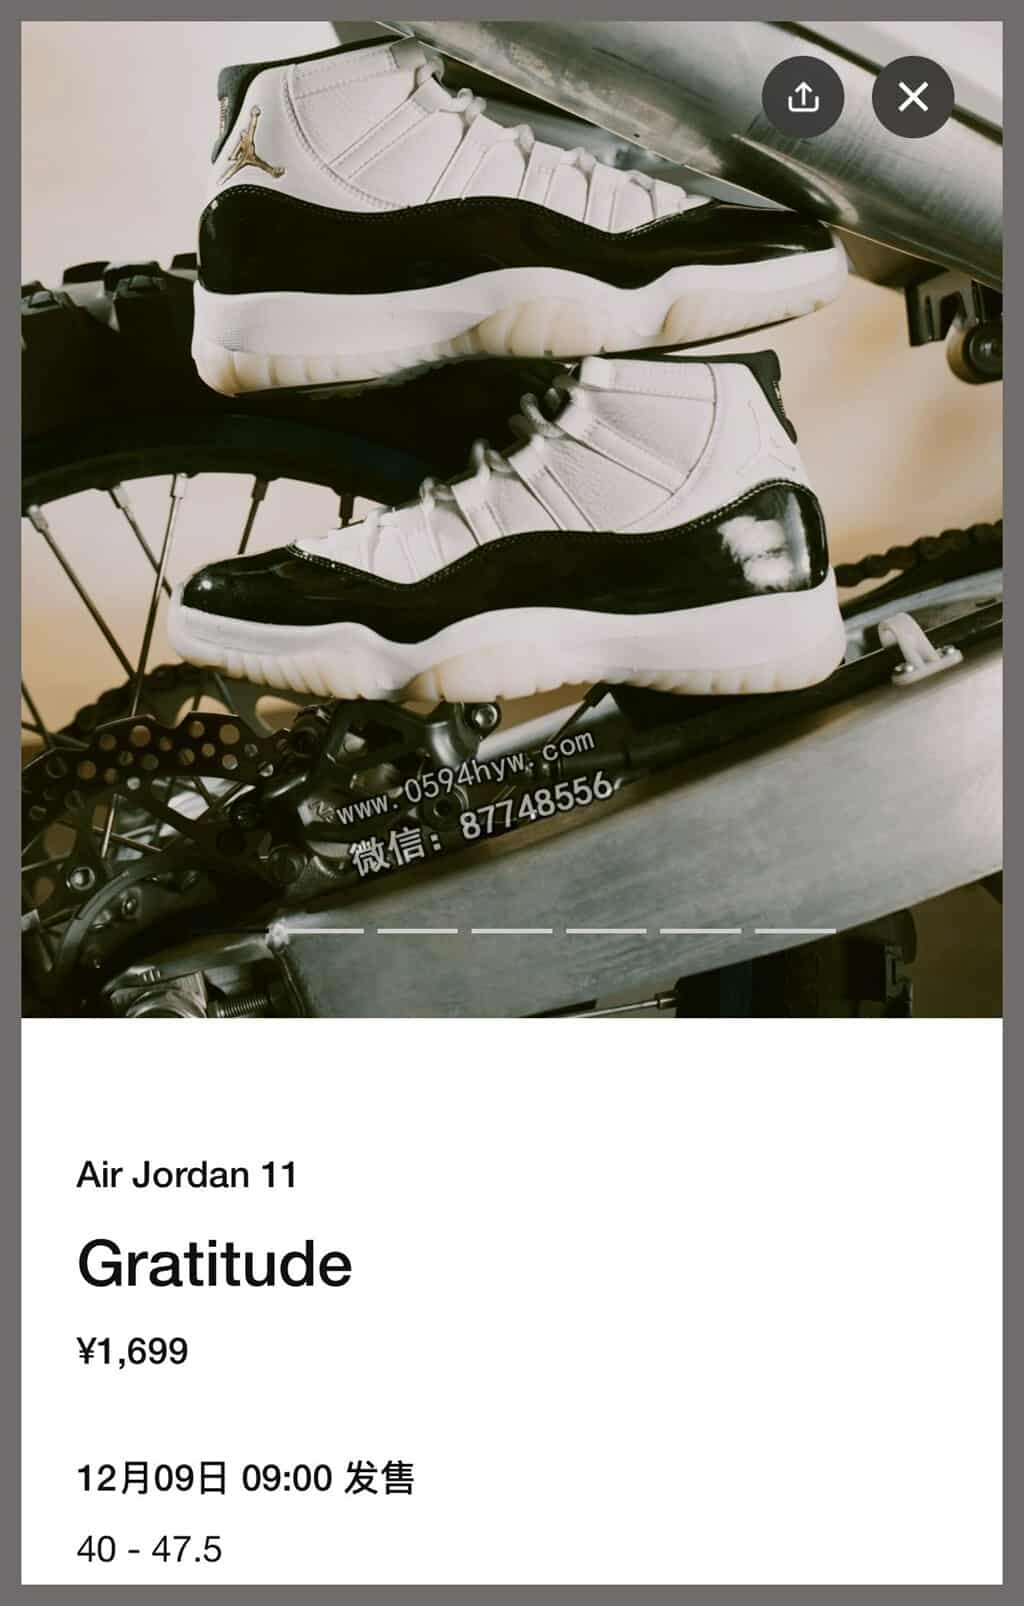 篮球鞋, Jordan, Gratitude, AJ11, Aj1, Air Jordan 11, Air Jordan 1, Air Jordan